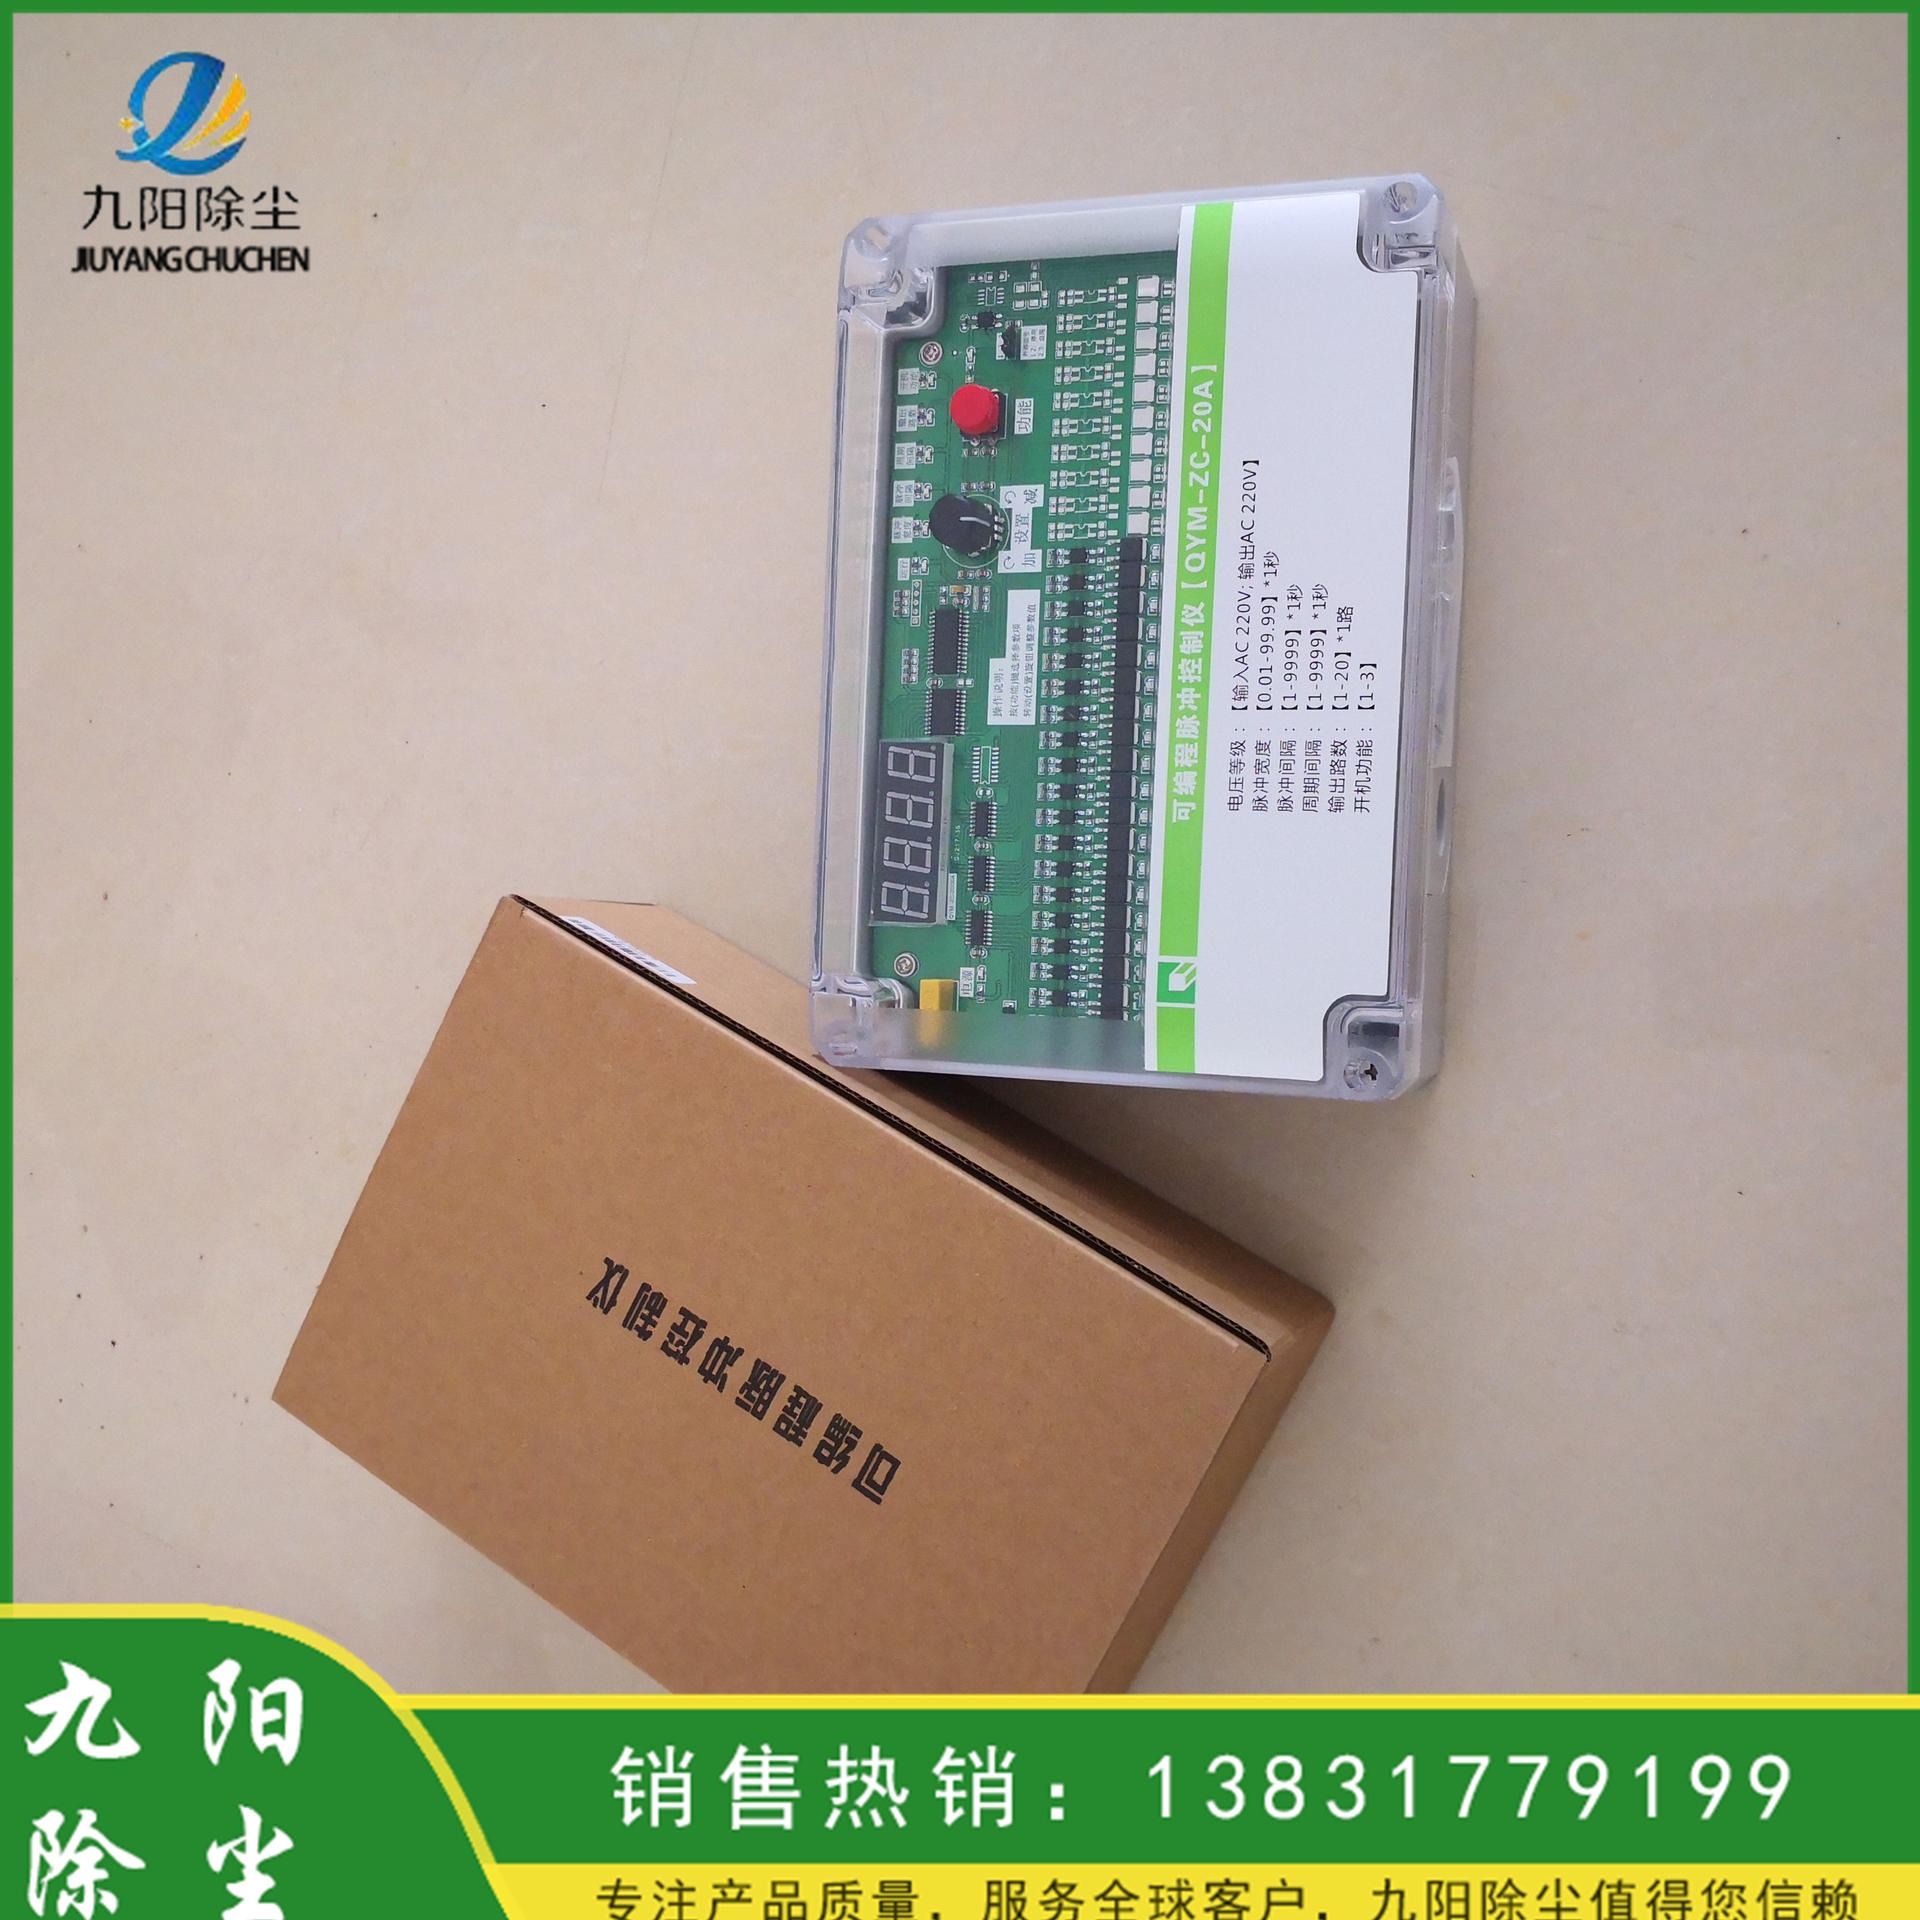 九阳现货供应生产销售 脉冲控制仪JMK10路 数字显示器脉冲控制仪 可编程控制仪图片